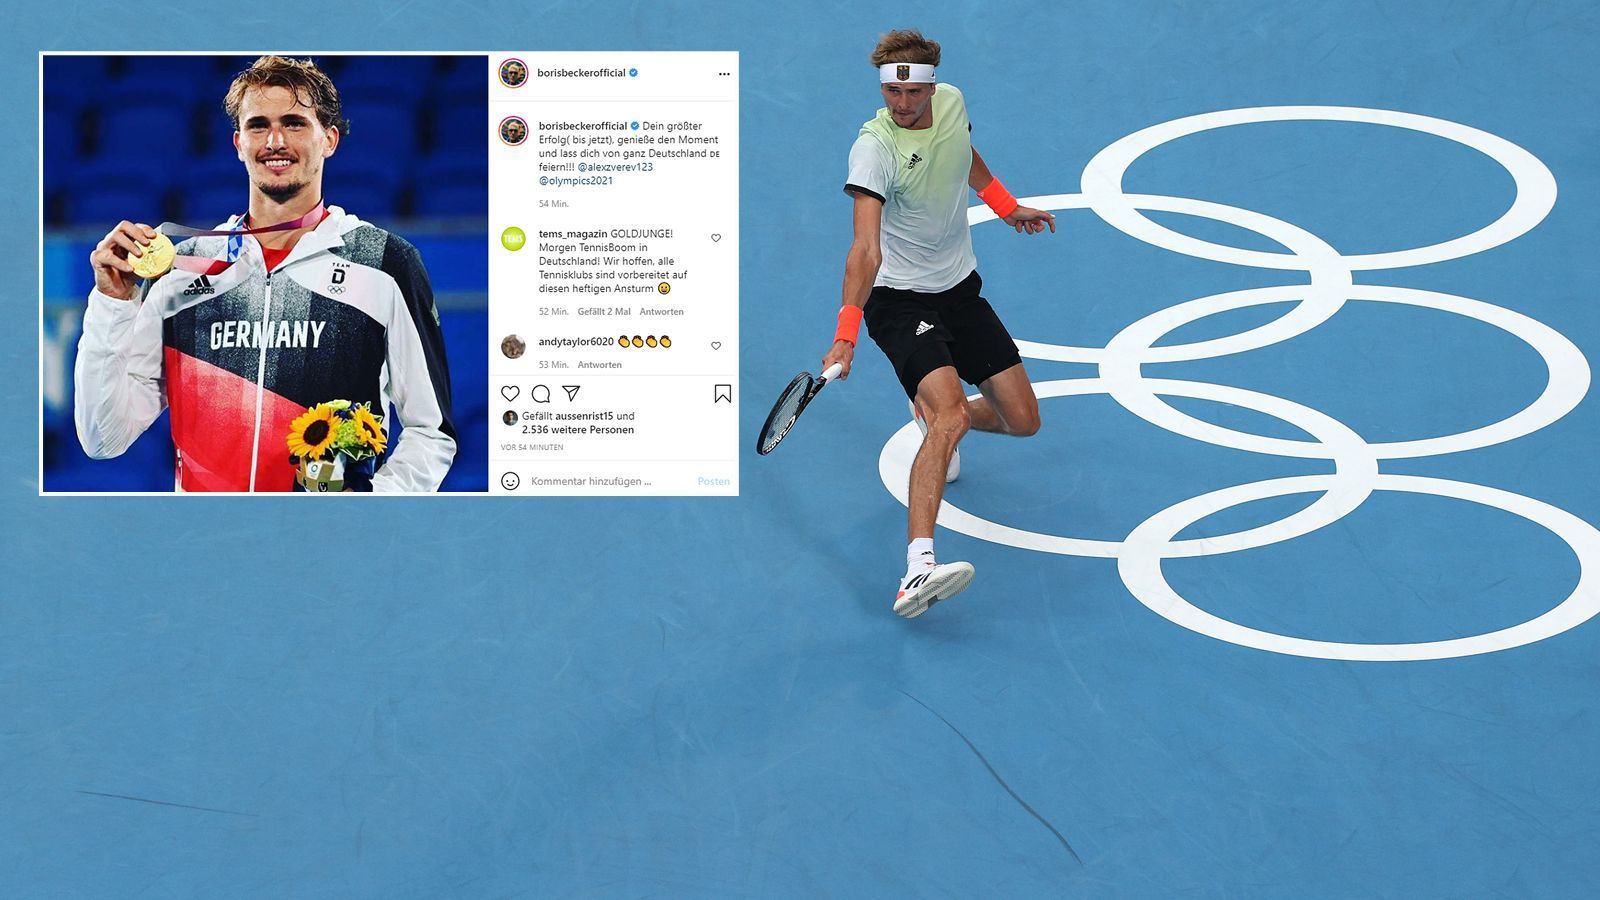 
                <strong>Boris Becker</strong><br>
                Deutschlands Tennis-Ikone Boris Becker meldet sich nach Zverevs Final-Triumph via Instagram. "Dein größter Erfolg (bis jetzt), genieße den Moment und lass dich von ganz Deutschland feiern", schrieb Becker in Richtung des deutschen Tennis-Olympiasiegers. 
              